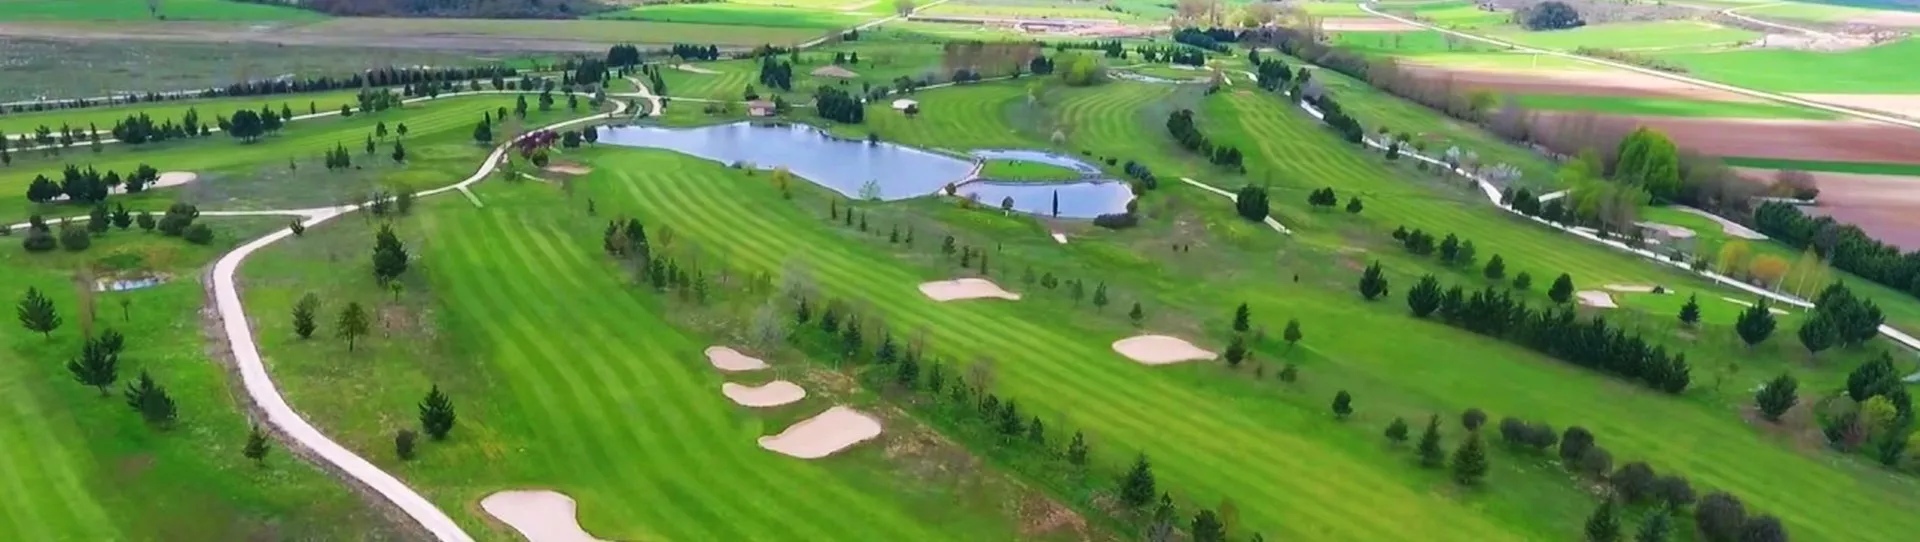 Spain golf courses - Riocerezo Golf Course - Photo 4